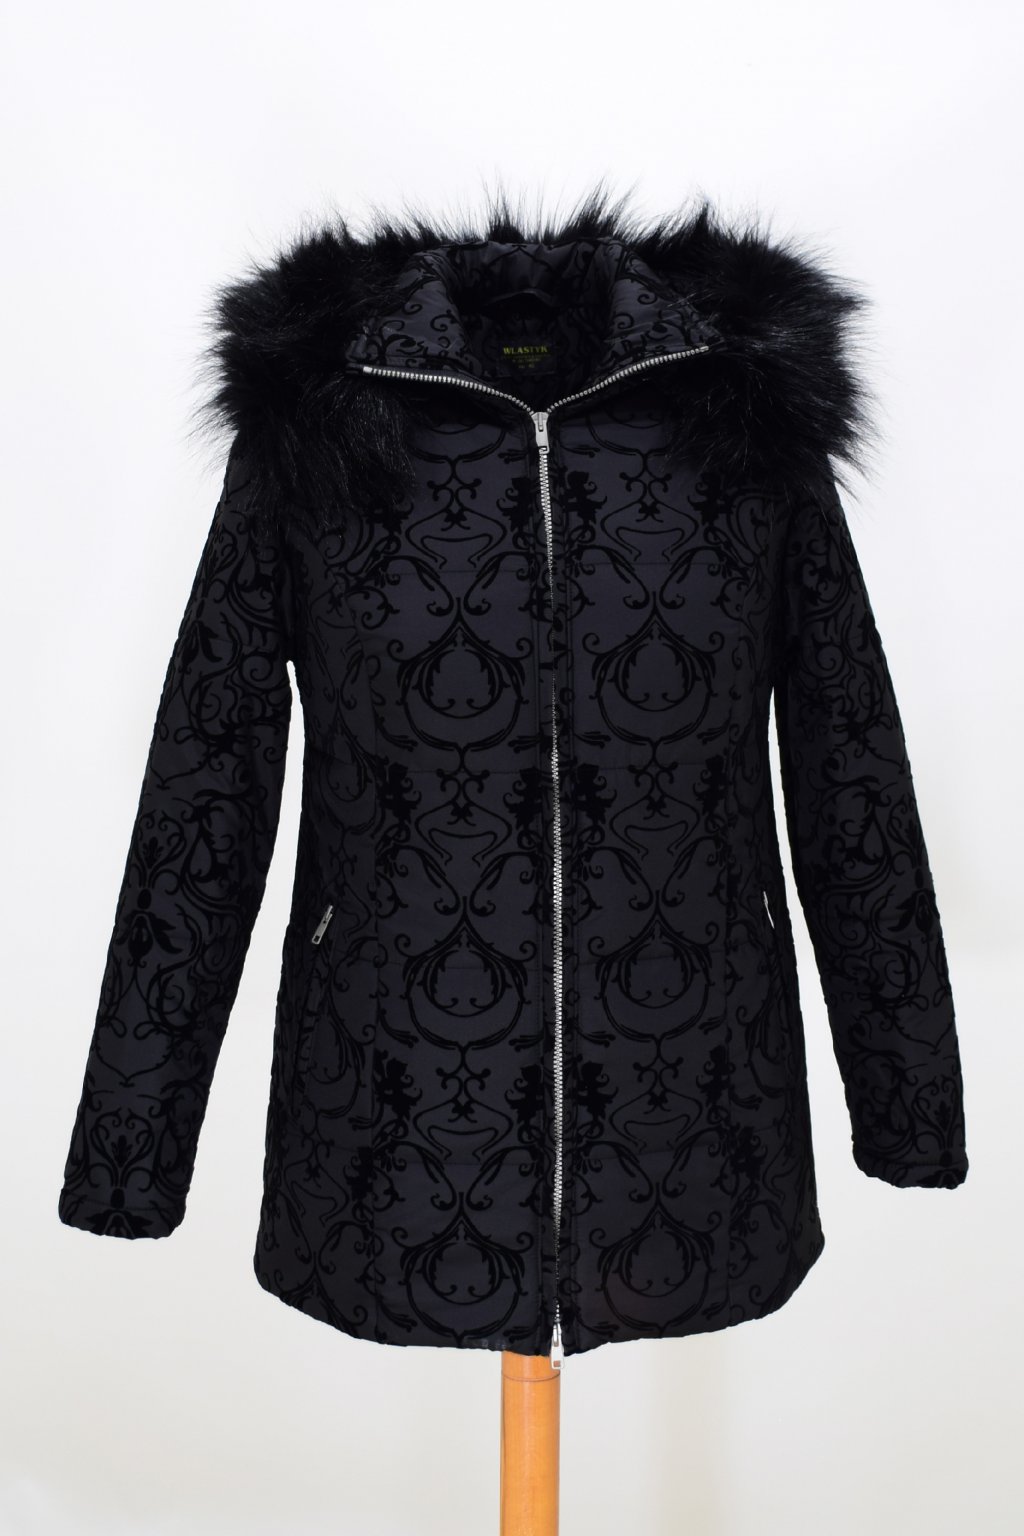 Dámská černá zimní bunda Megan nadměrné velikosti.